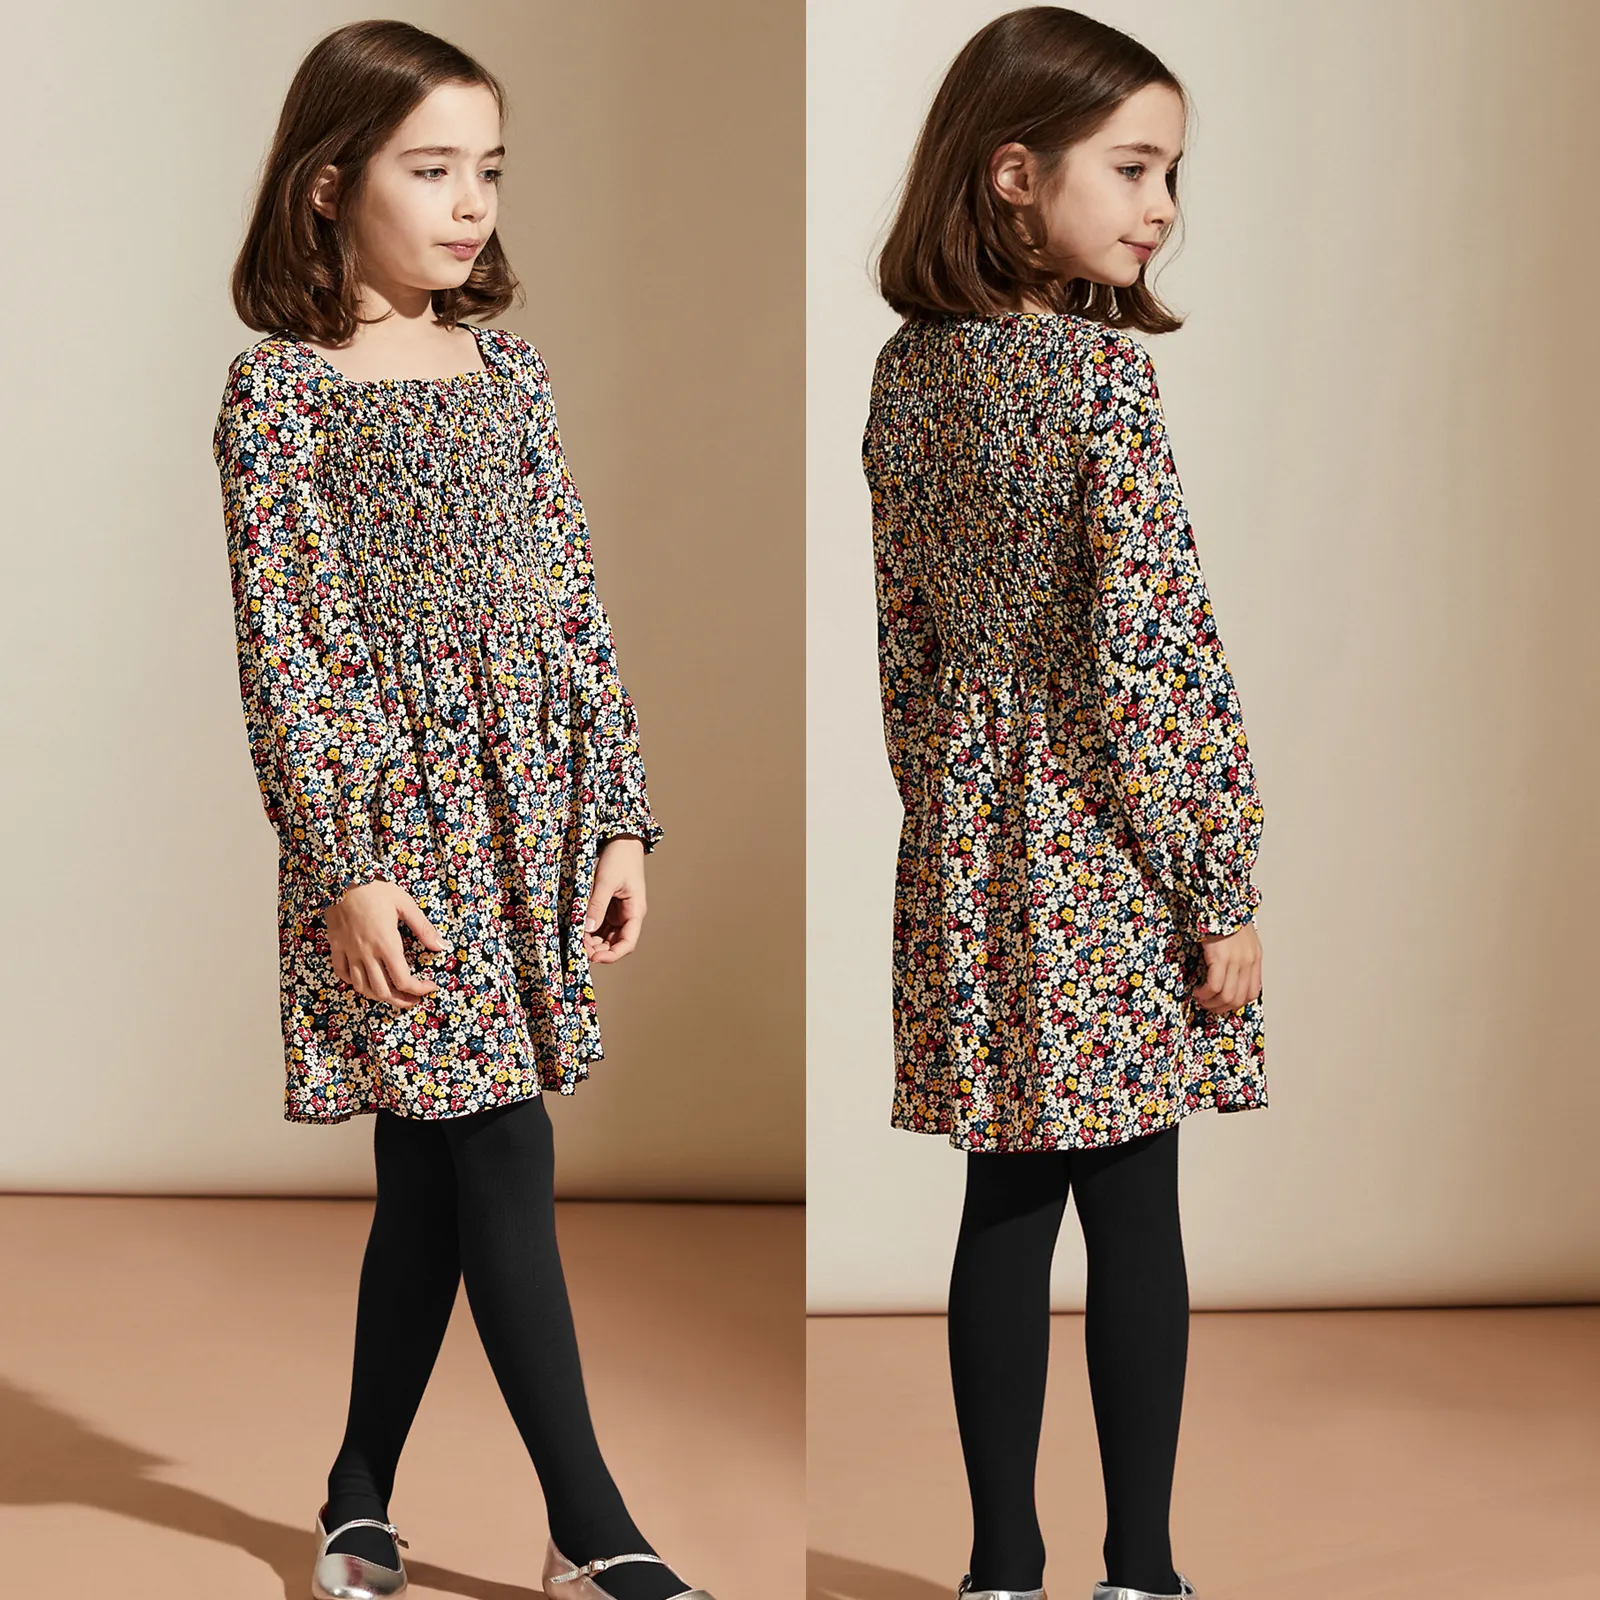 Oem aceitar a qualidade superior crianças roupas de designer de moda vestidos meninas de 6 a 14 anos